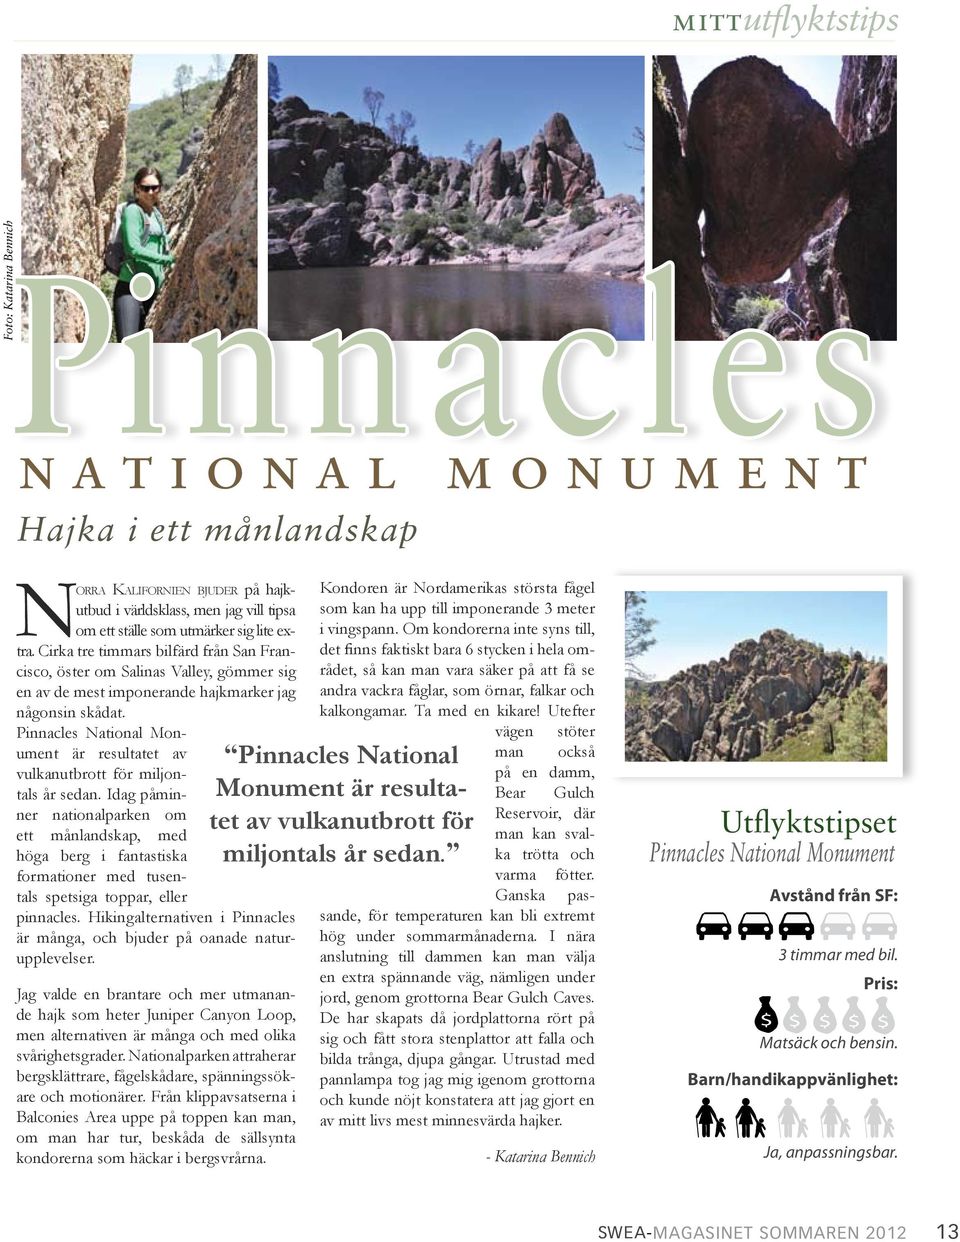 Pinnacles National Monument är resultatet av vulkanutbrott för miljontals år sedan.